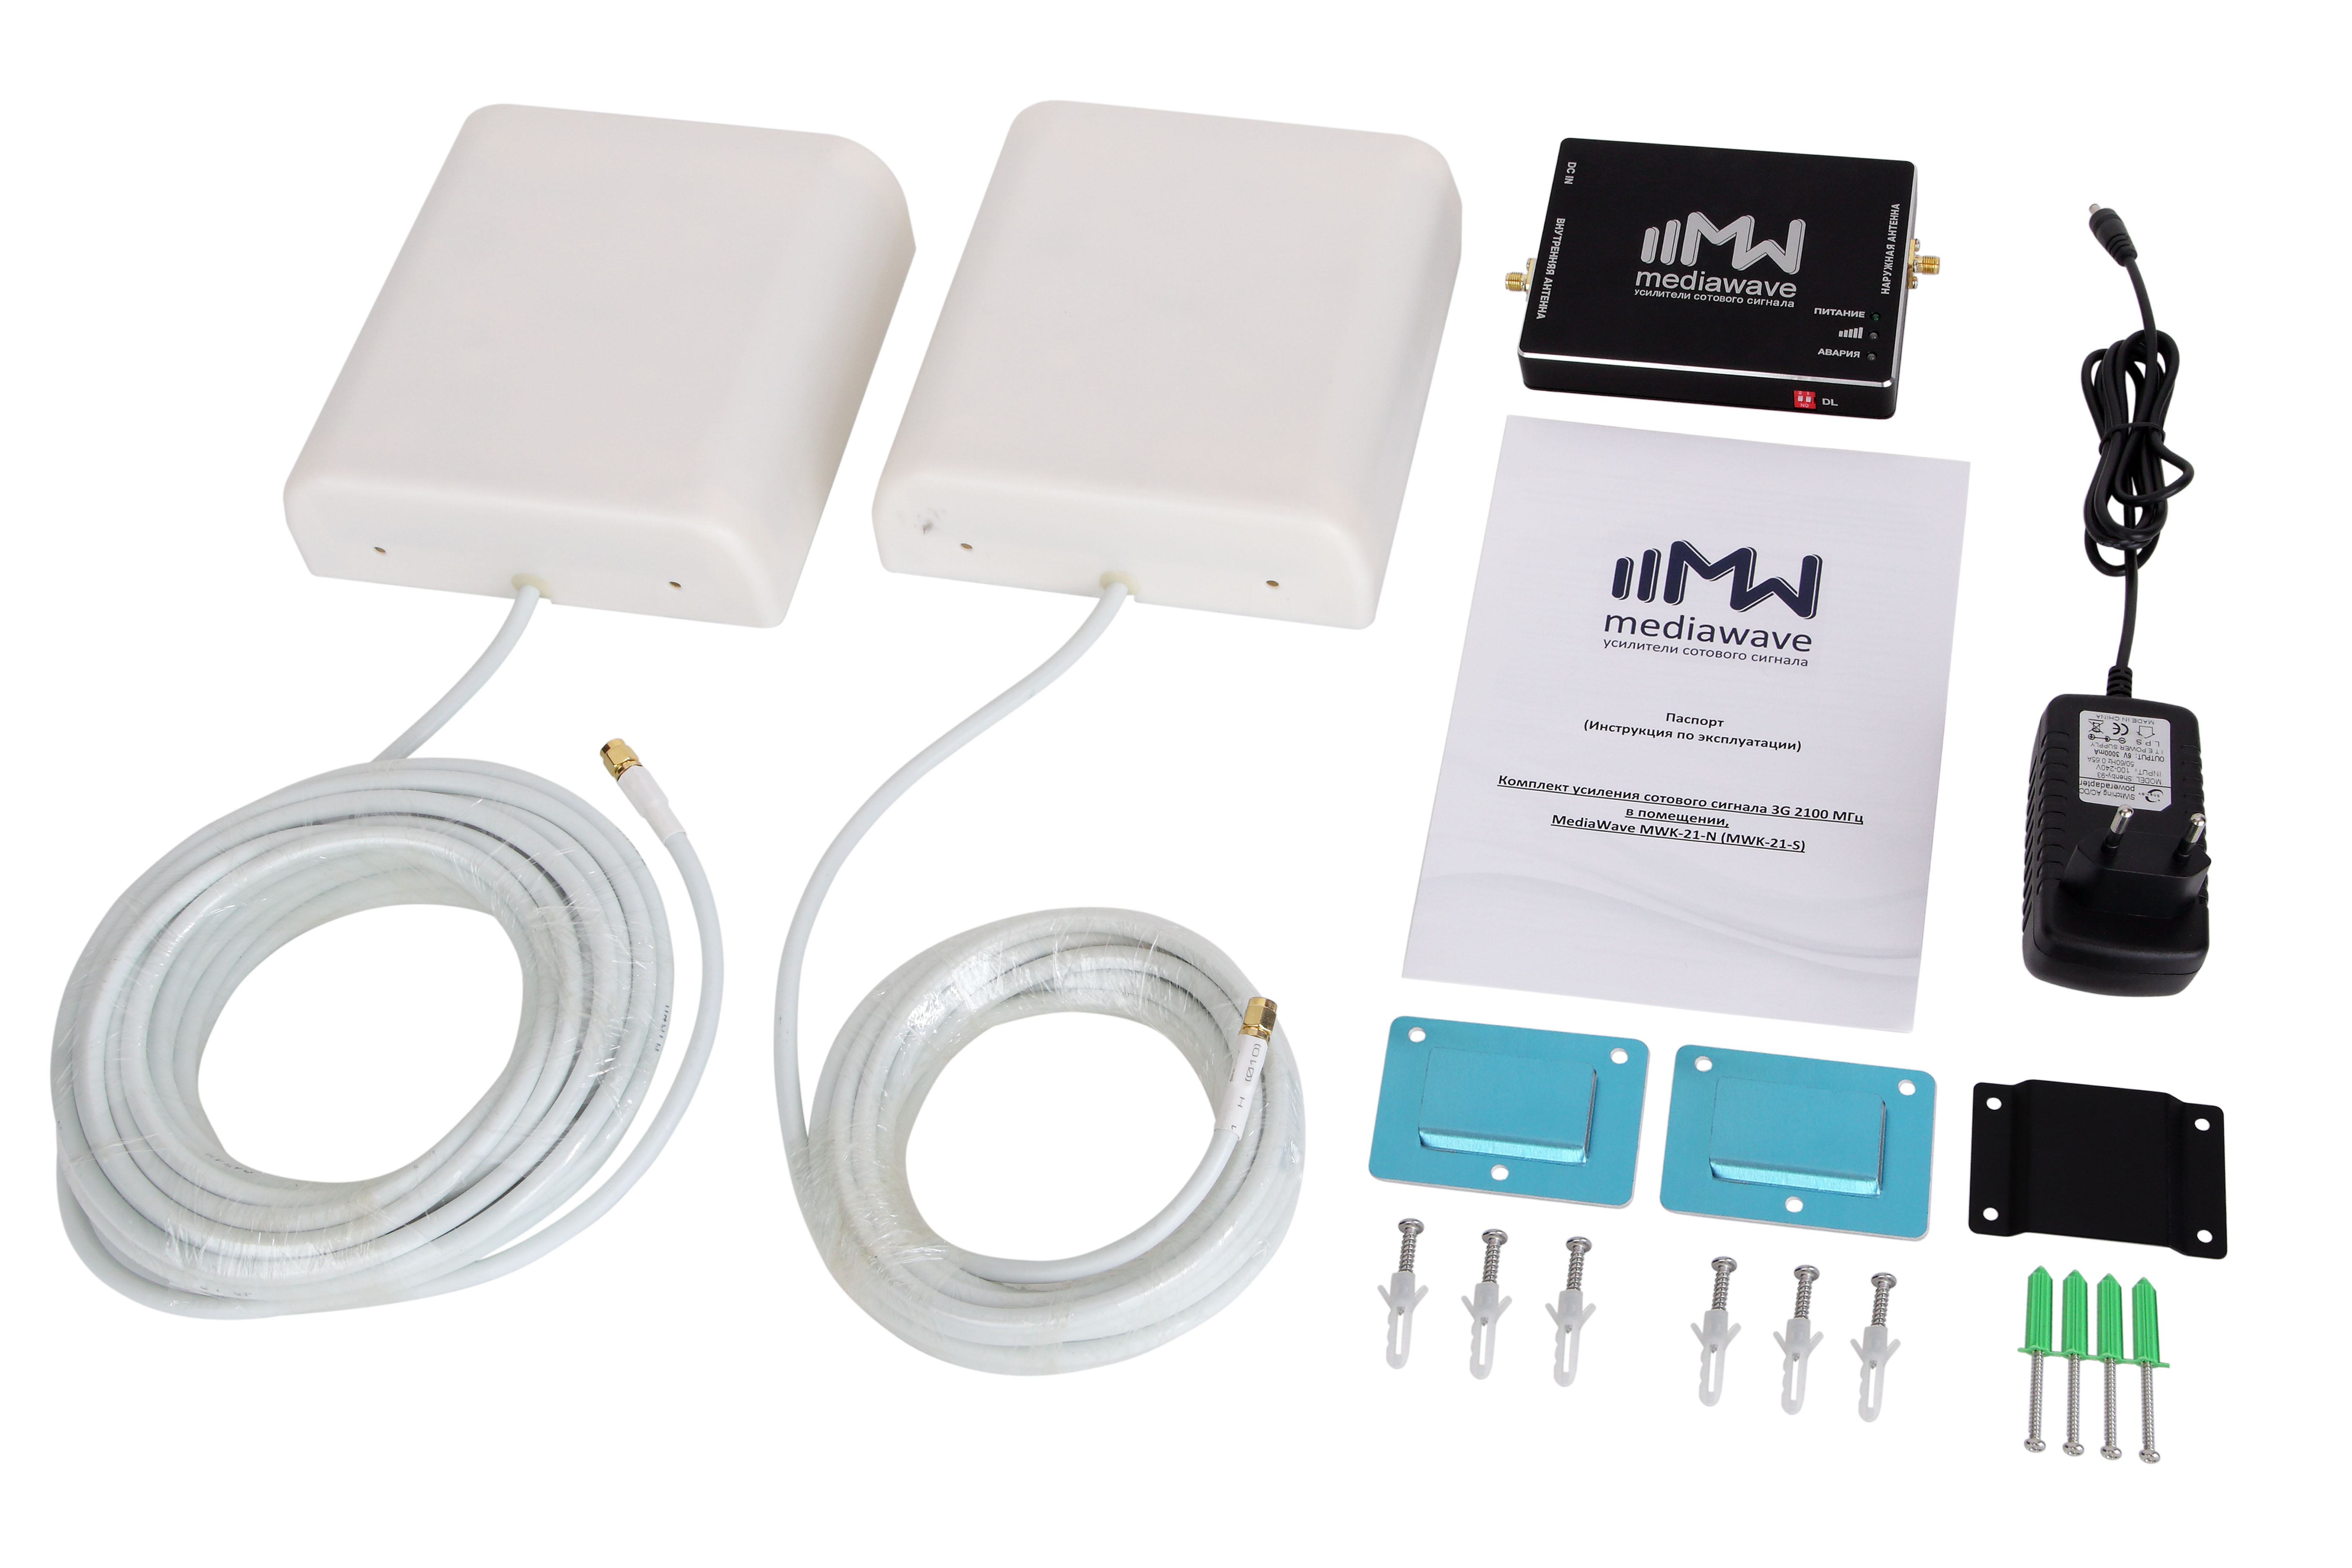 MWK-9-N: комплект усиления сотового сигнала и интернета 900МГц (GSM/3G-UMTS), 65дб/200мВт, до 1000м²